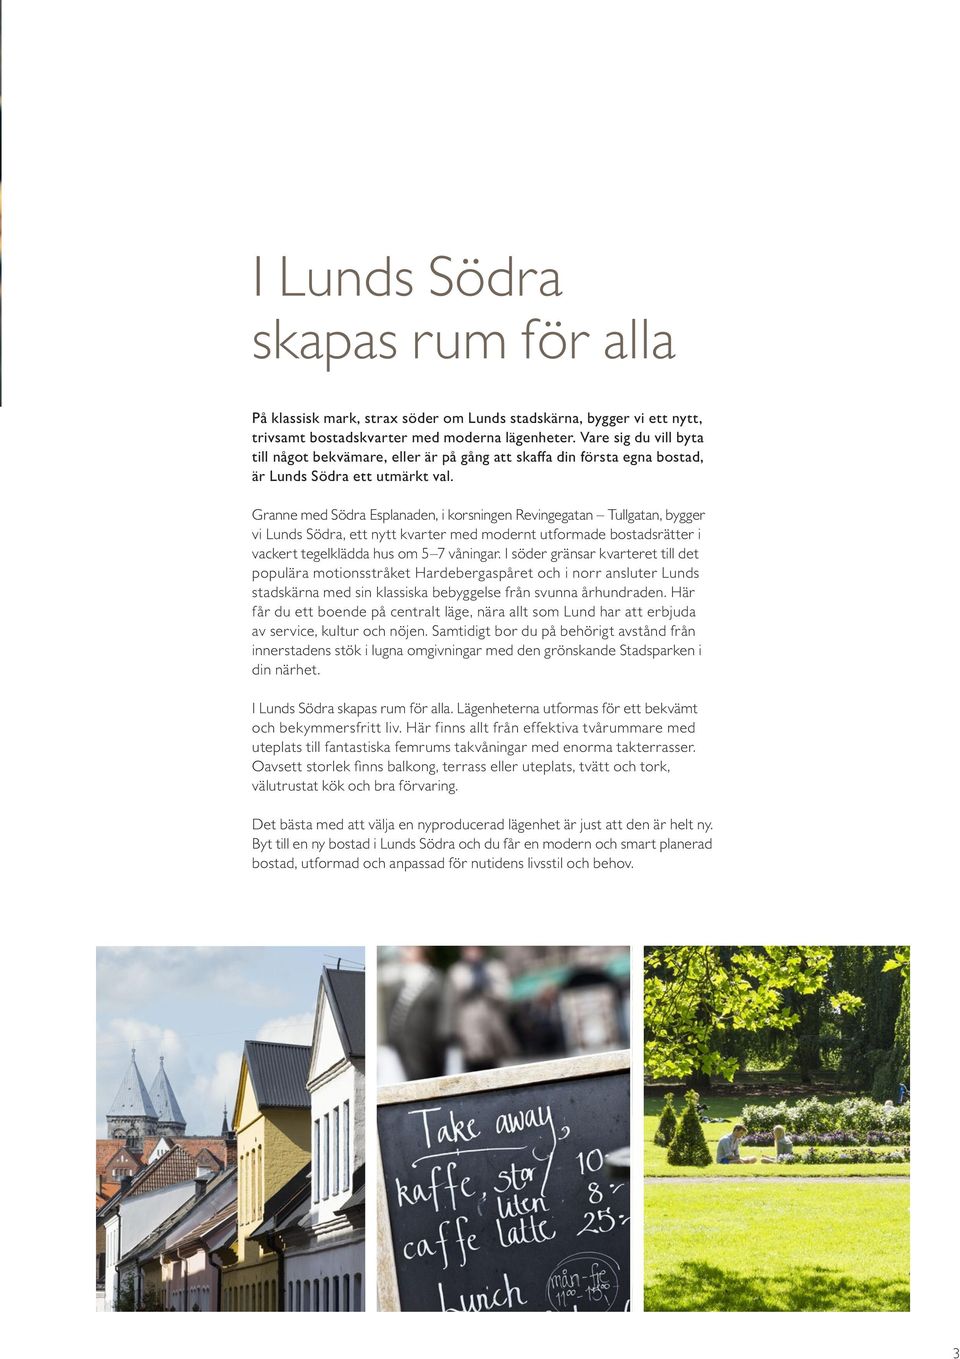 Granne med Södra Esplanaden, i korsningen Revingegatan Tullgatan, bygger vi Lunds Södra, ett nytt kvarter med modernt utformade bostadsrätter i vackert tegelklädda hus om 5 7 våningar.